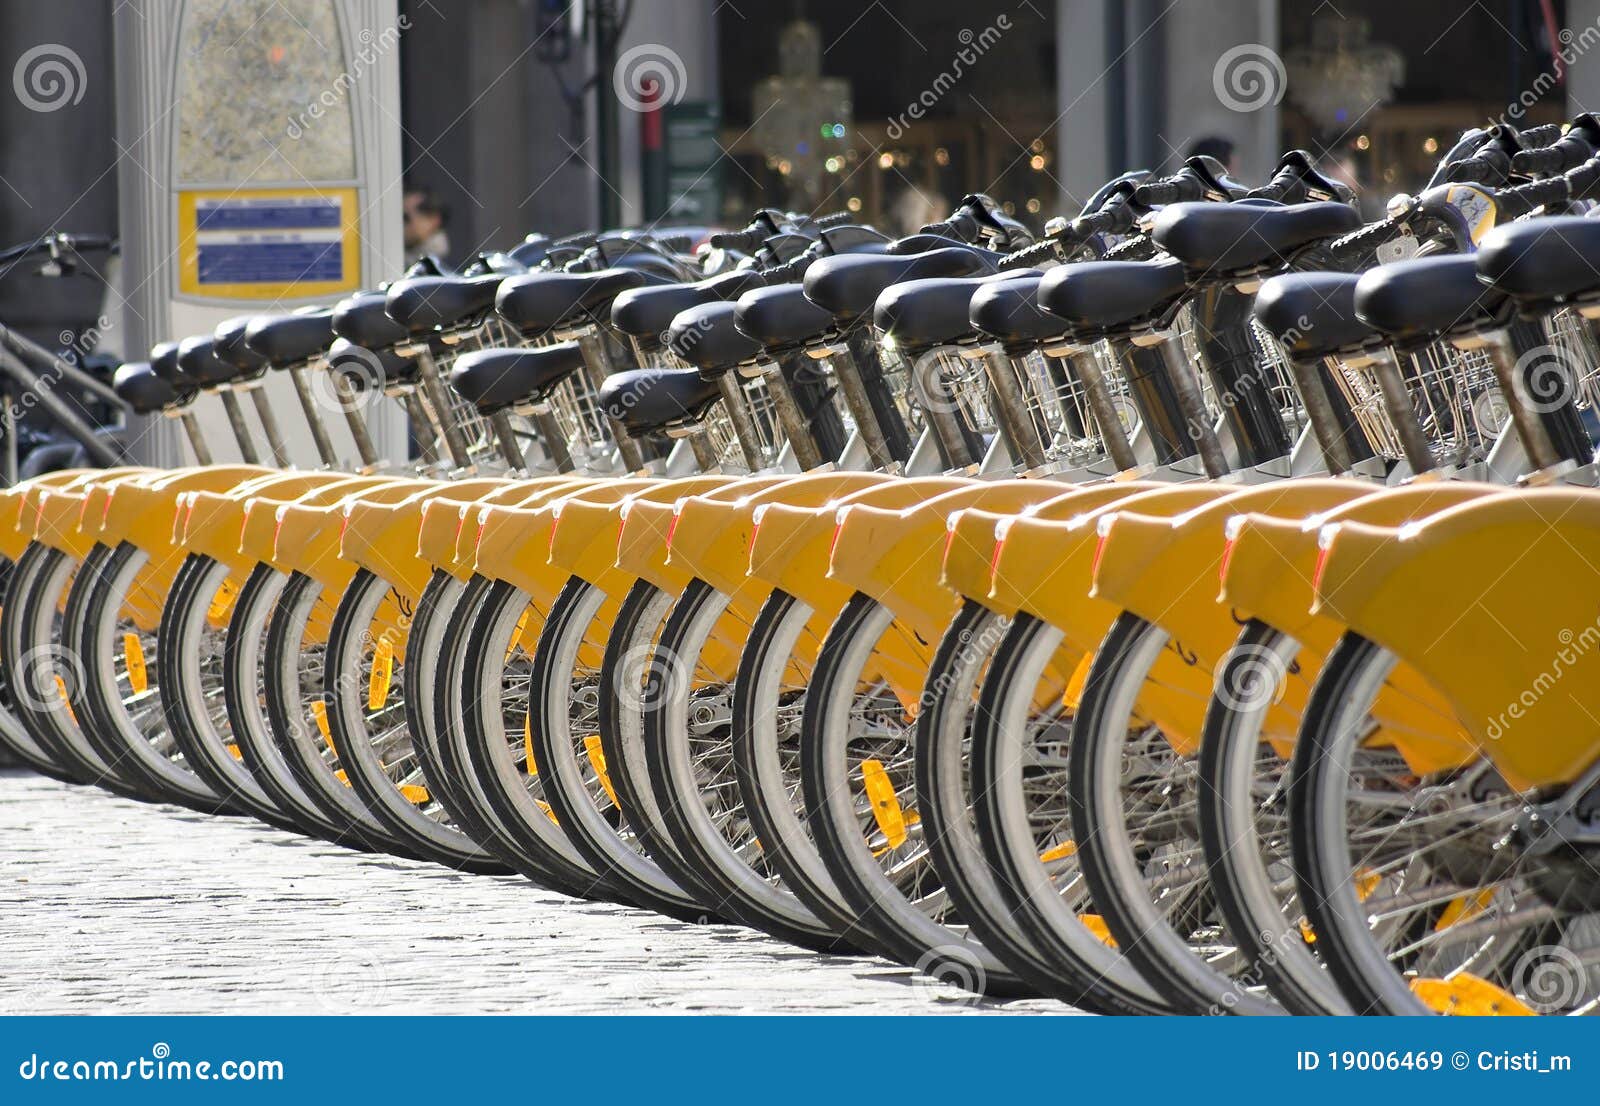 μίσθωμα ποδηλάτων. μίσθωμα των Βρυξελλών ποδηλάτων του Βελγίου